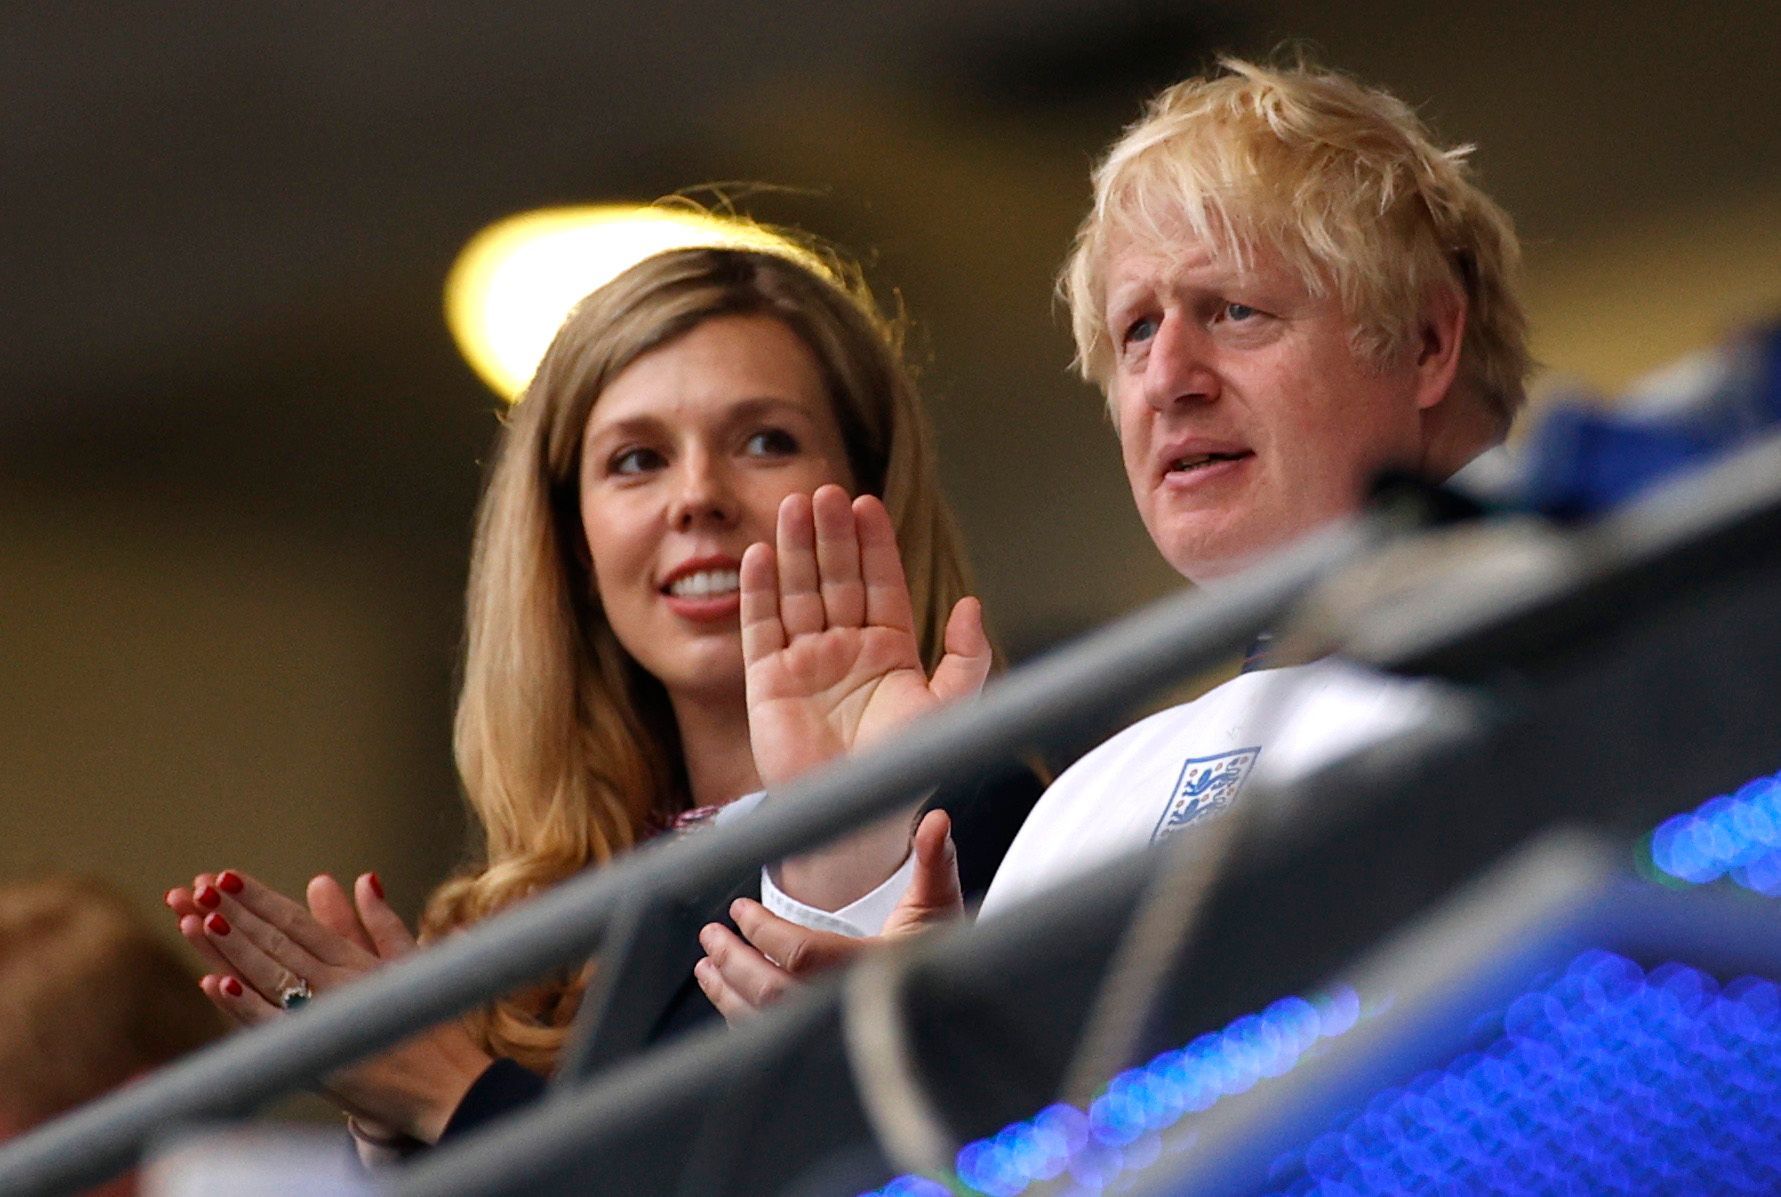 Britský premiér Boris Johnson s manželkou Carrie v hledišti finále ME 2020 Itálie - Anglie